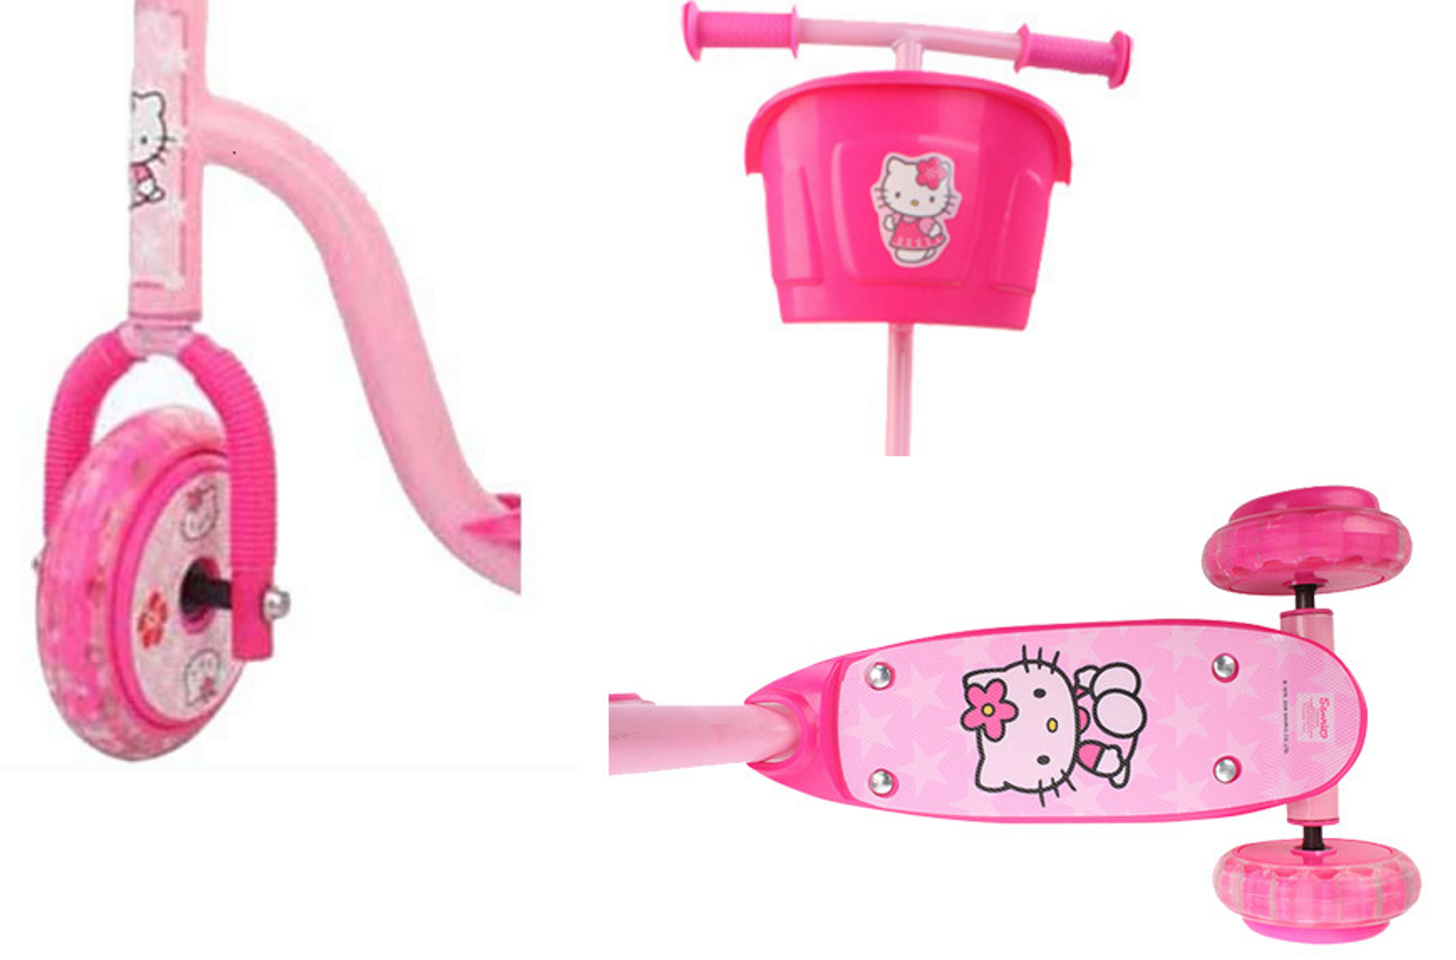 Thiết kế hợp lý của xe trượt Scooter 3 bánh Hello Kitty phù hợp với bé gái lần đầu đi xe